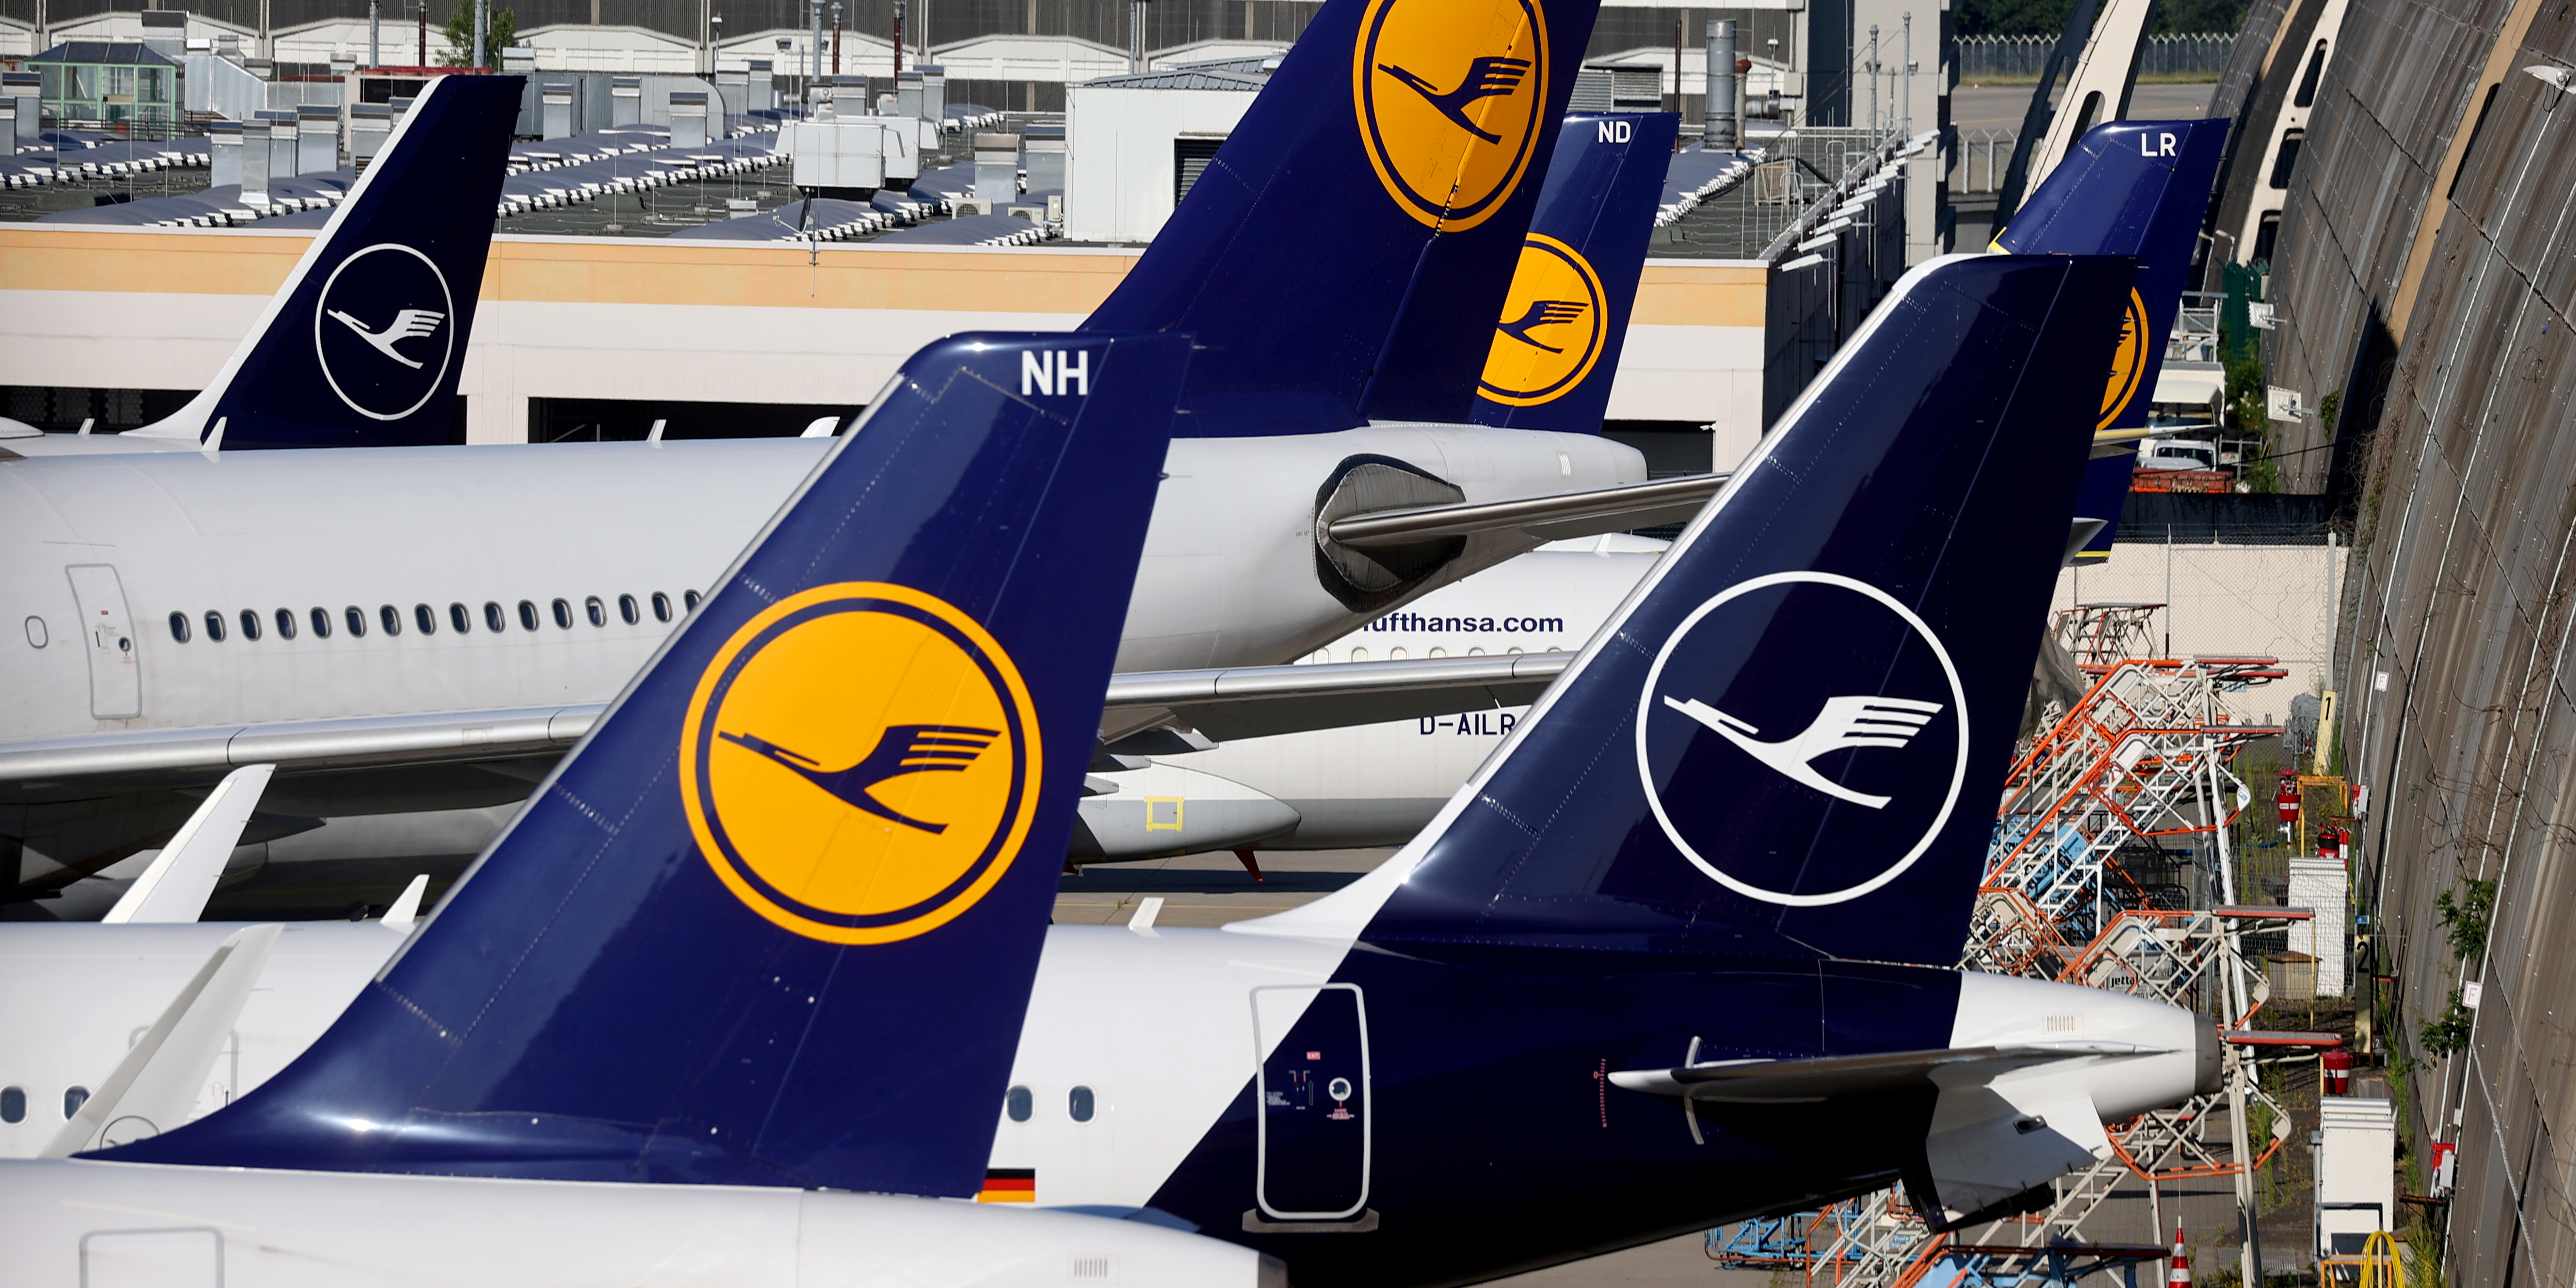 Lufthansa: accord sur 200 millions d'euros d'économies pour le personnel au sol